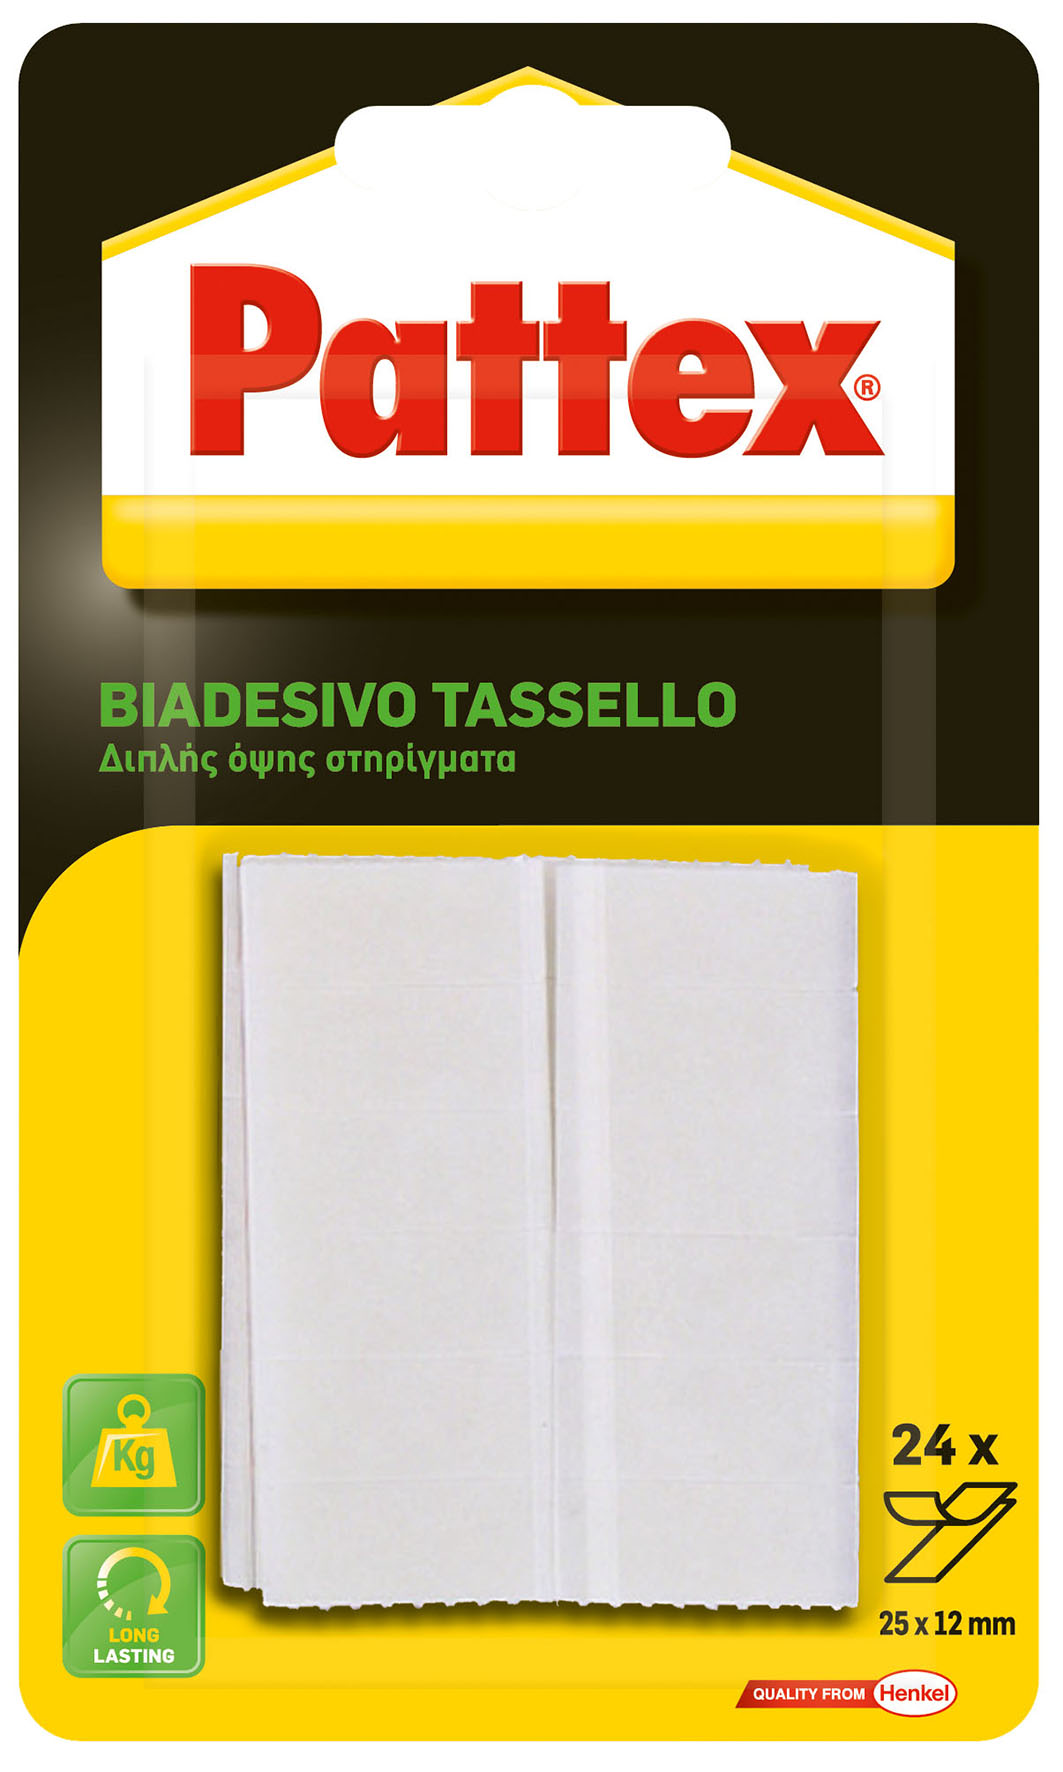 PATTEX TASSELLO BIADES  25X12